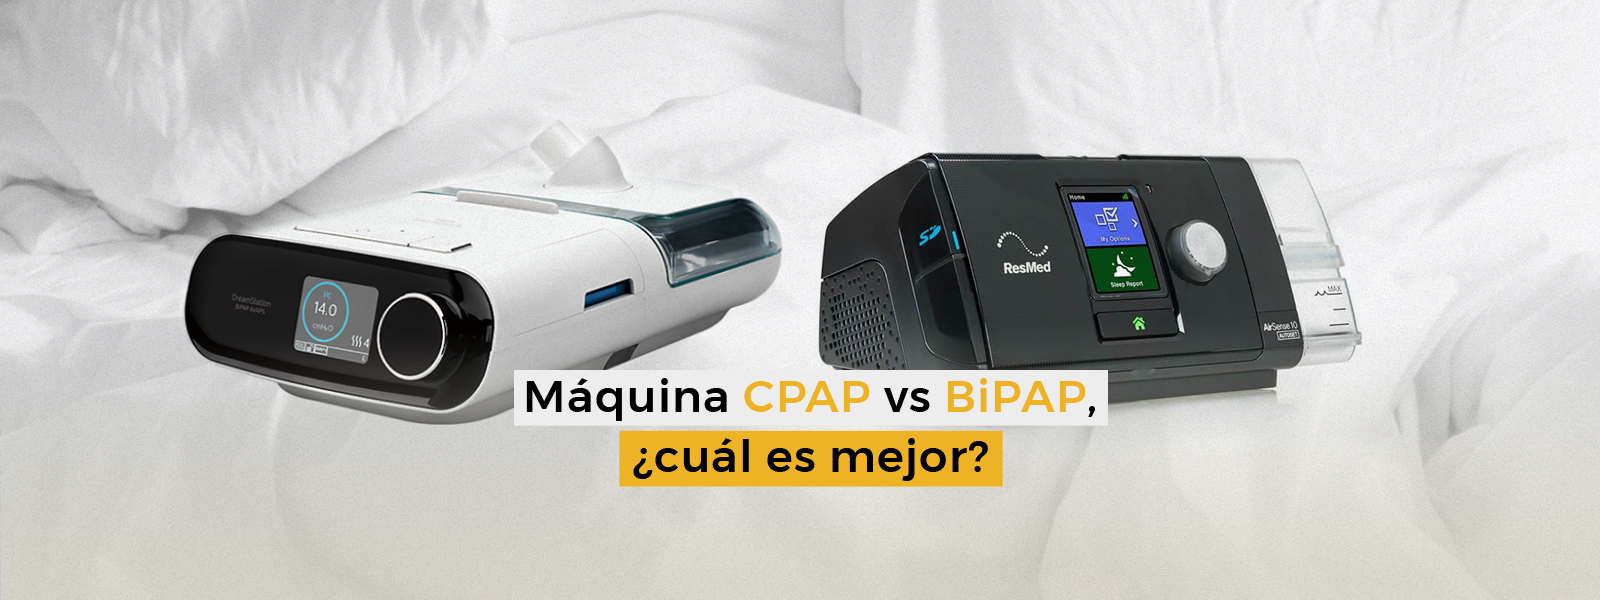 ¿Cual es la diferencia entre un CPAP y un biPAP?